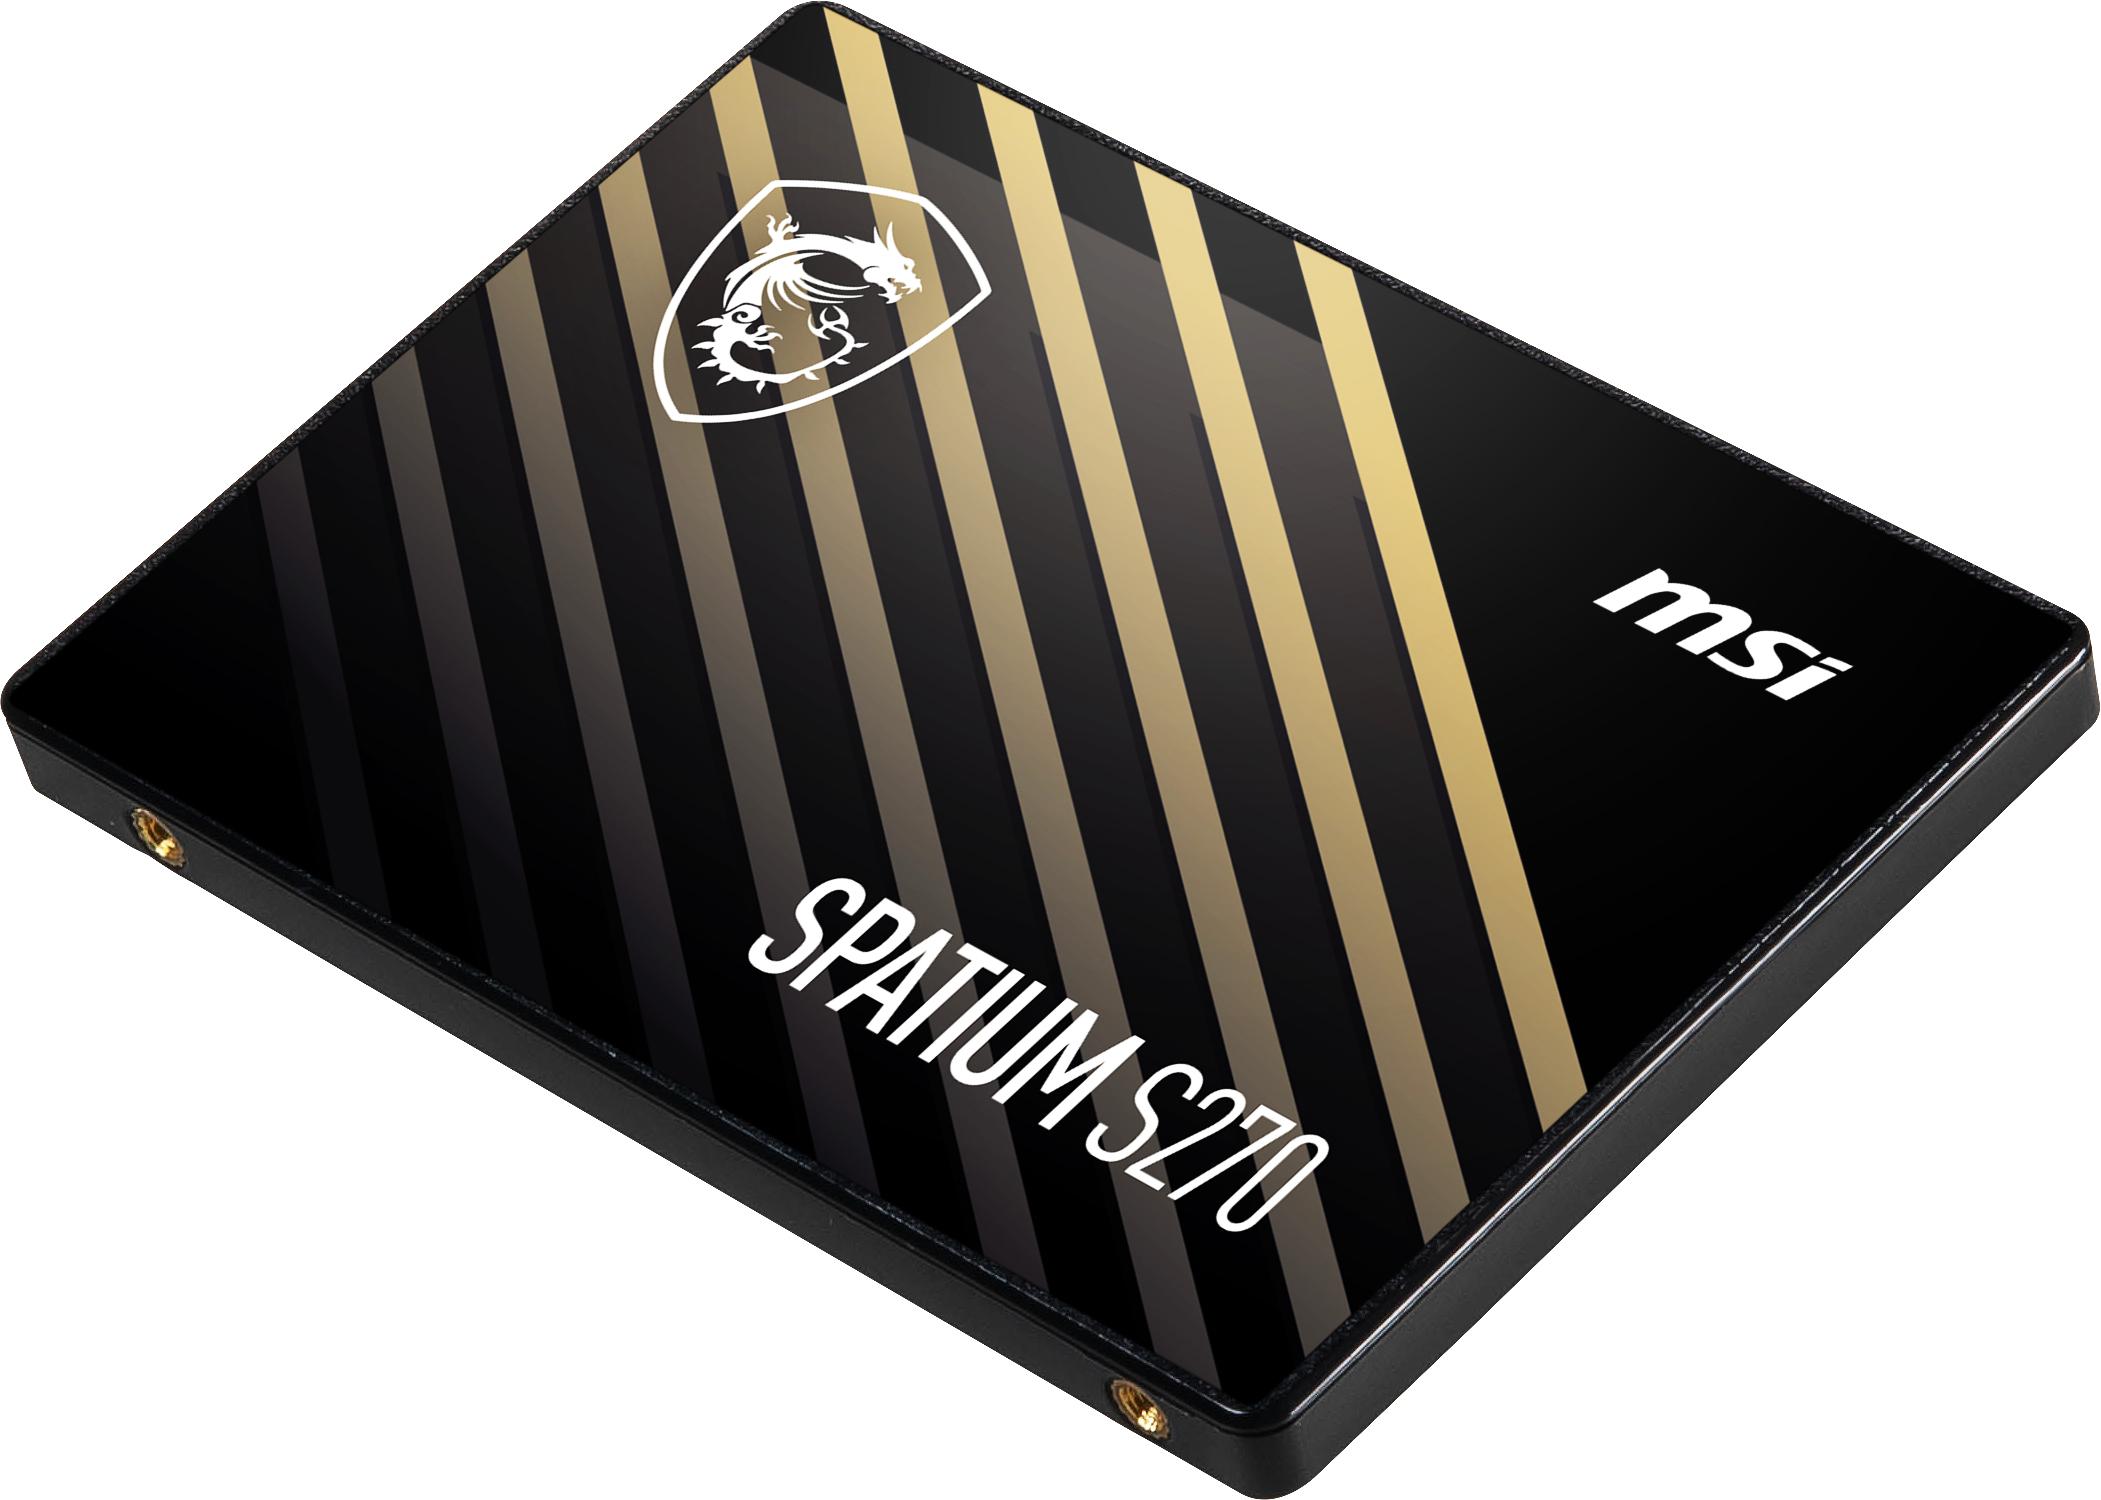 SSD MSI SPATIUM S270 480GB SATA IIII (500/450MB/s)